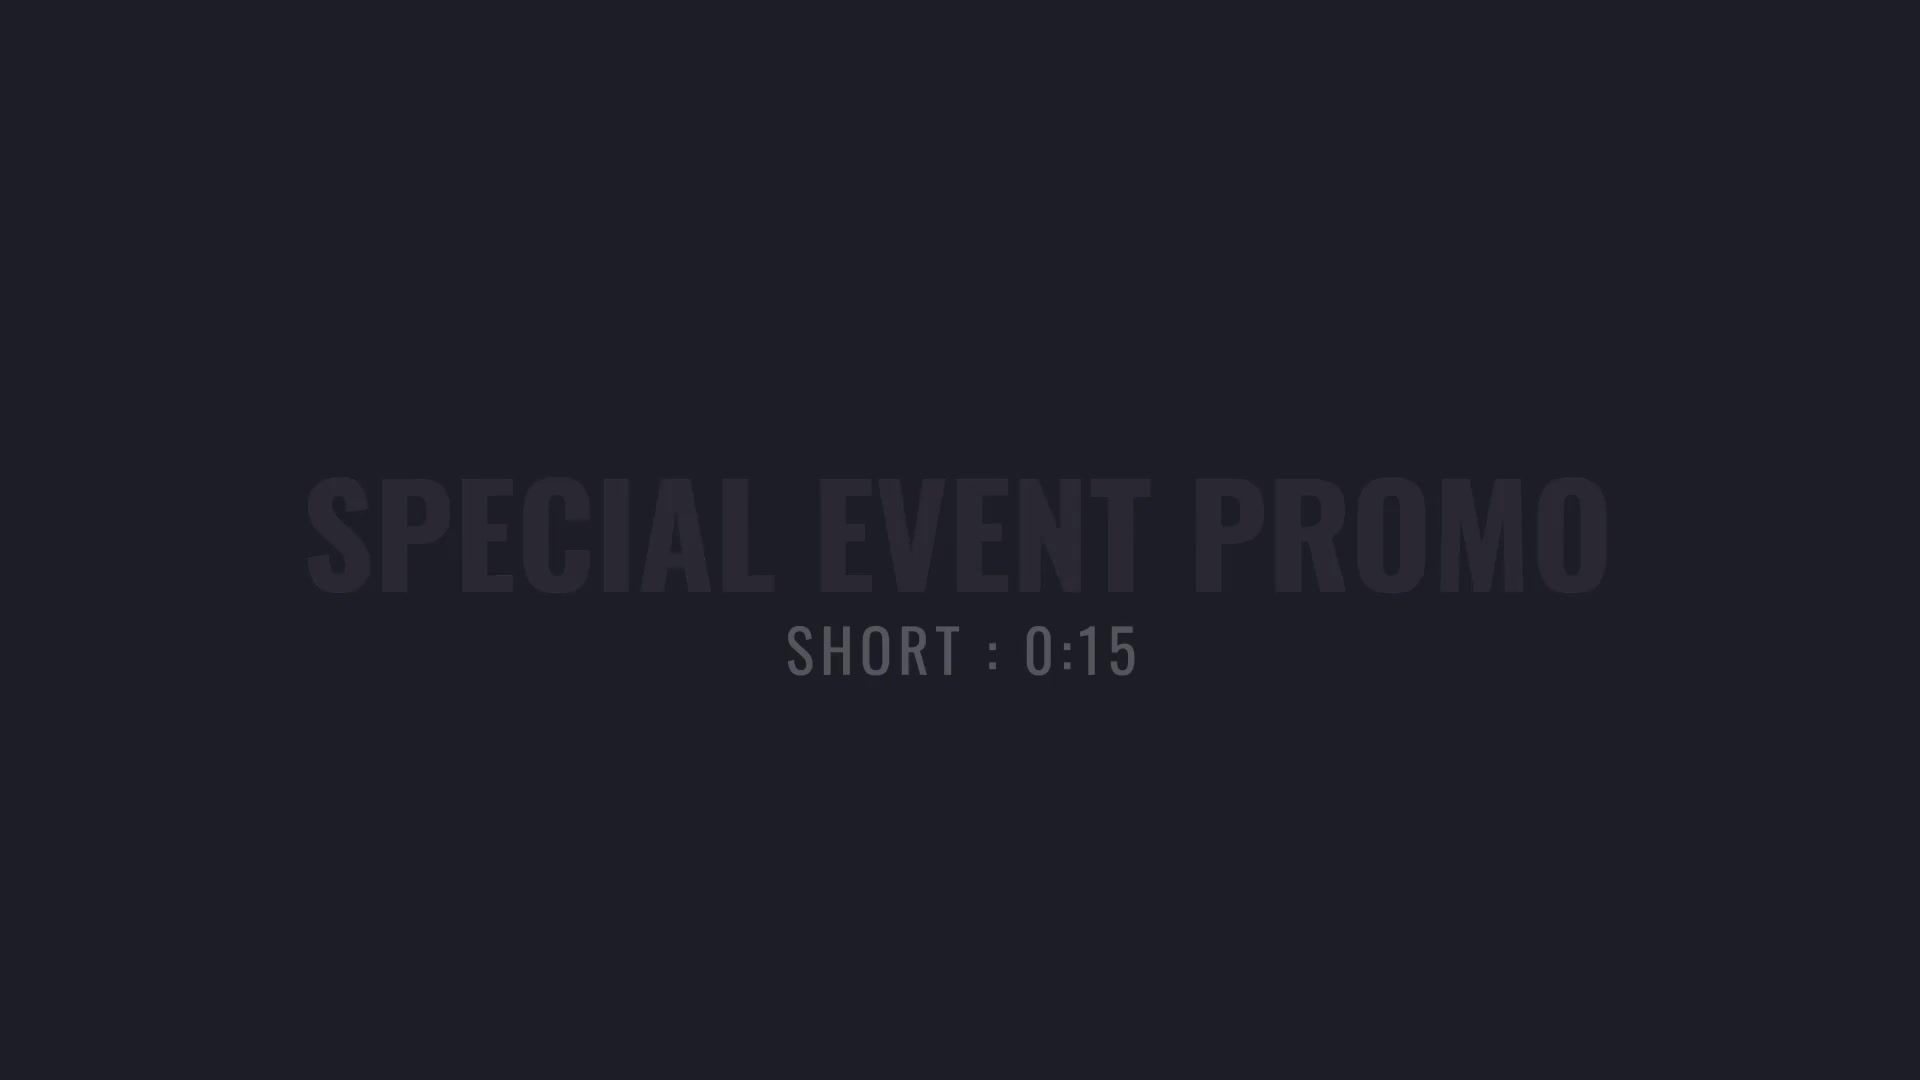 Special Event Promo Videohive 35449580 Premiere Pro Image 6